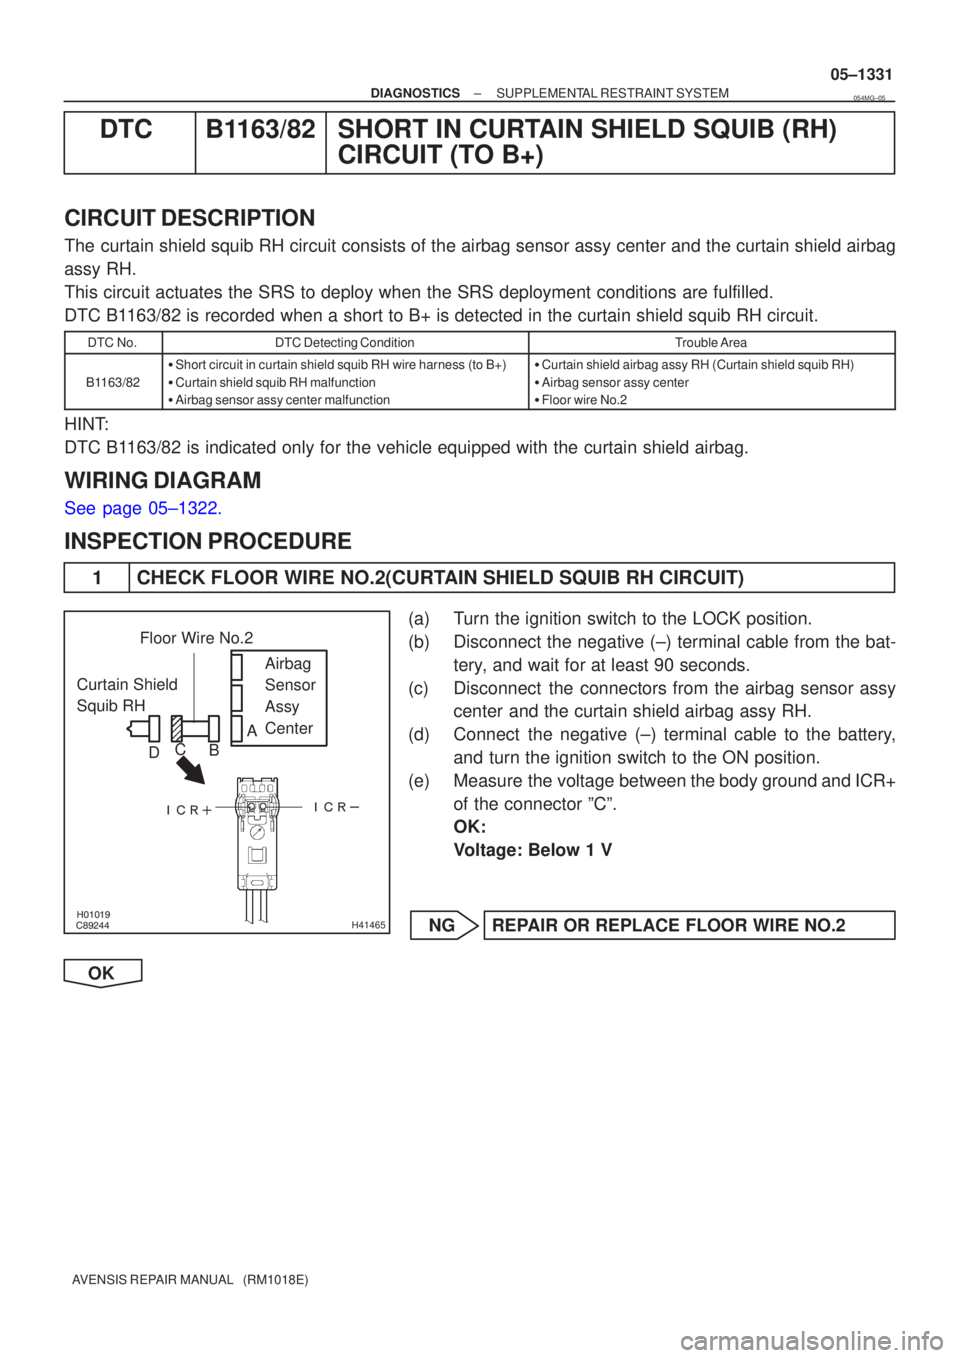 TOYOTA AVENSIS 2005  Service Repair Manual \b



H41465
Curtain Shield 
Squib RH Airbag 
Sensor 
Assy
Center
Floor Wire No.2
A
B
C
D
±
DIAGNOSTICS SUPPLEMENTAL RESTRAINT SYSTEM
05±1331
AVENSIS REPAIR MANUAL   (RM1018E)
DTC